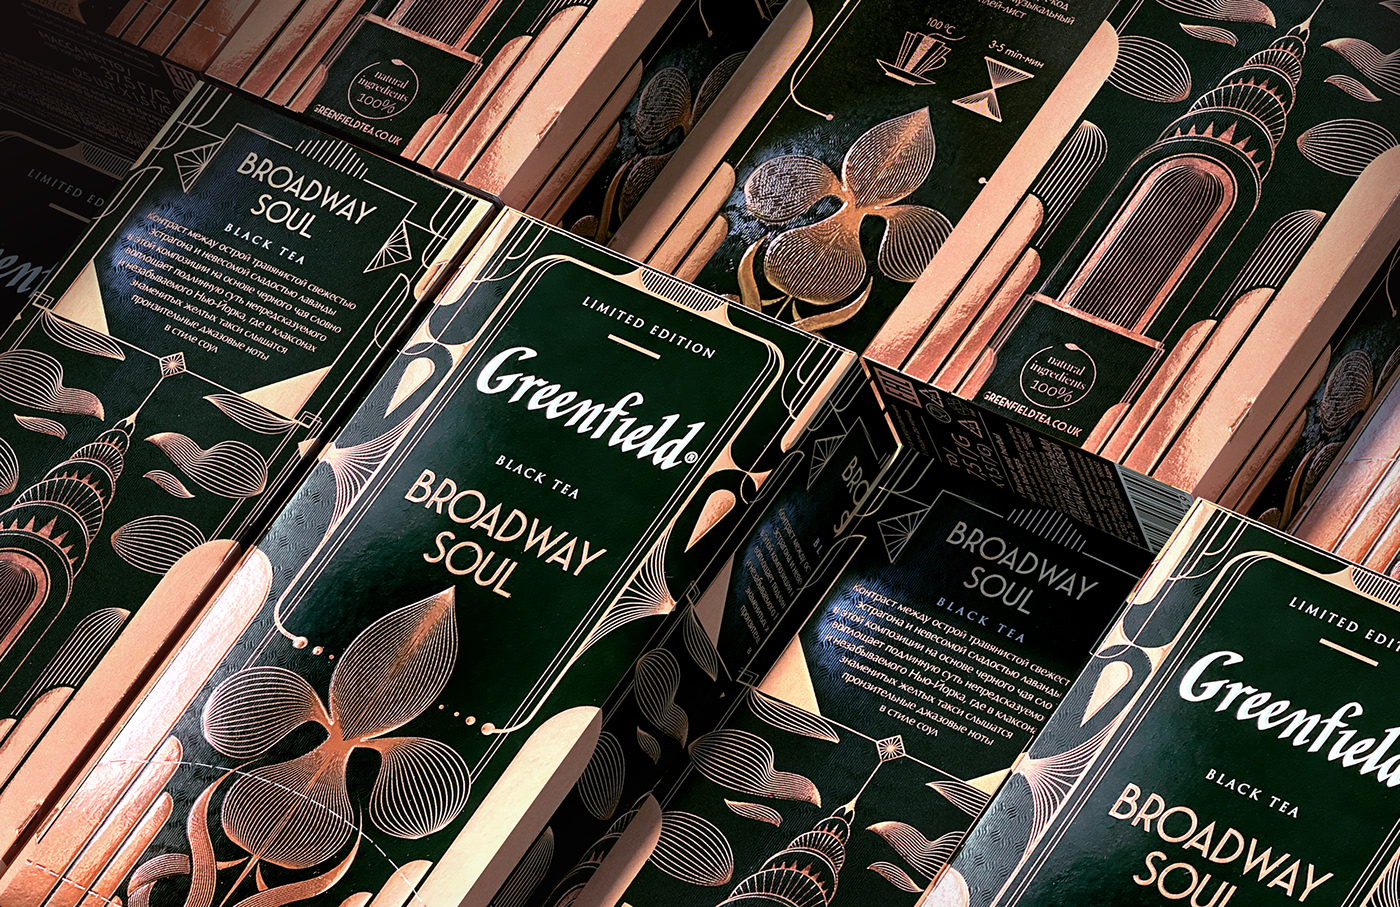  productpackagingdesign foodpackaging   graphic design  Labeldesign package package design  packagedesign pattern tea teapackaging